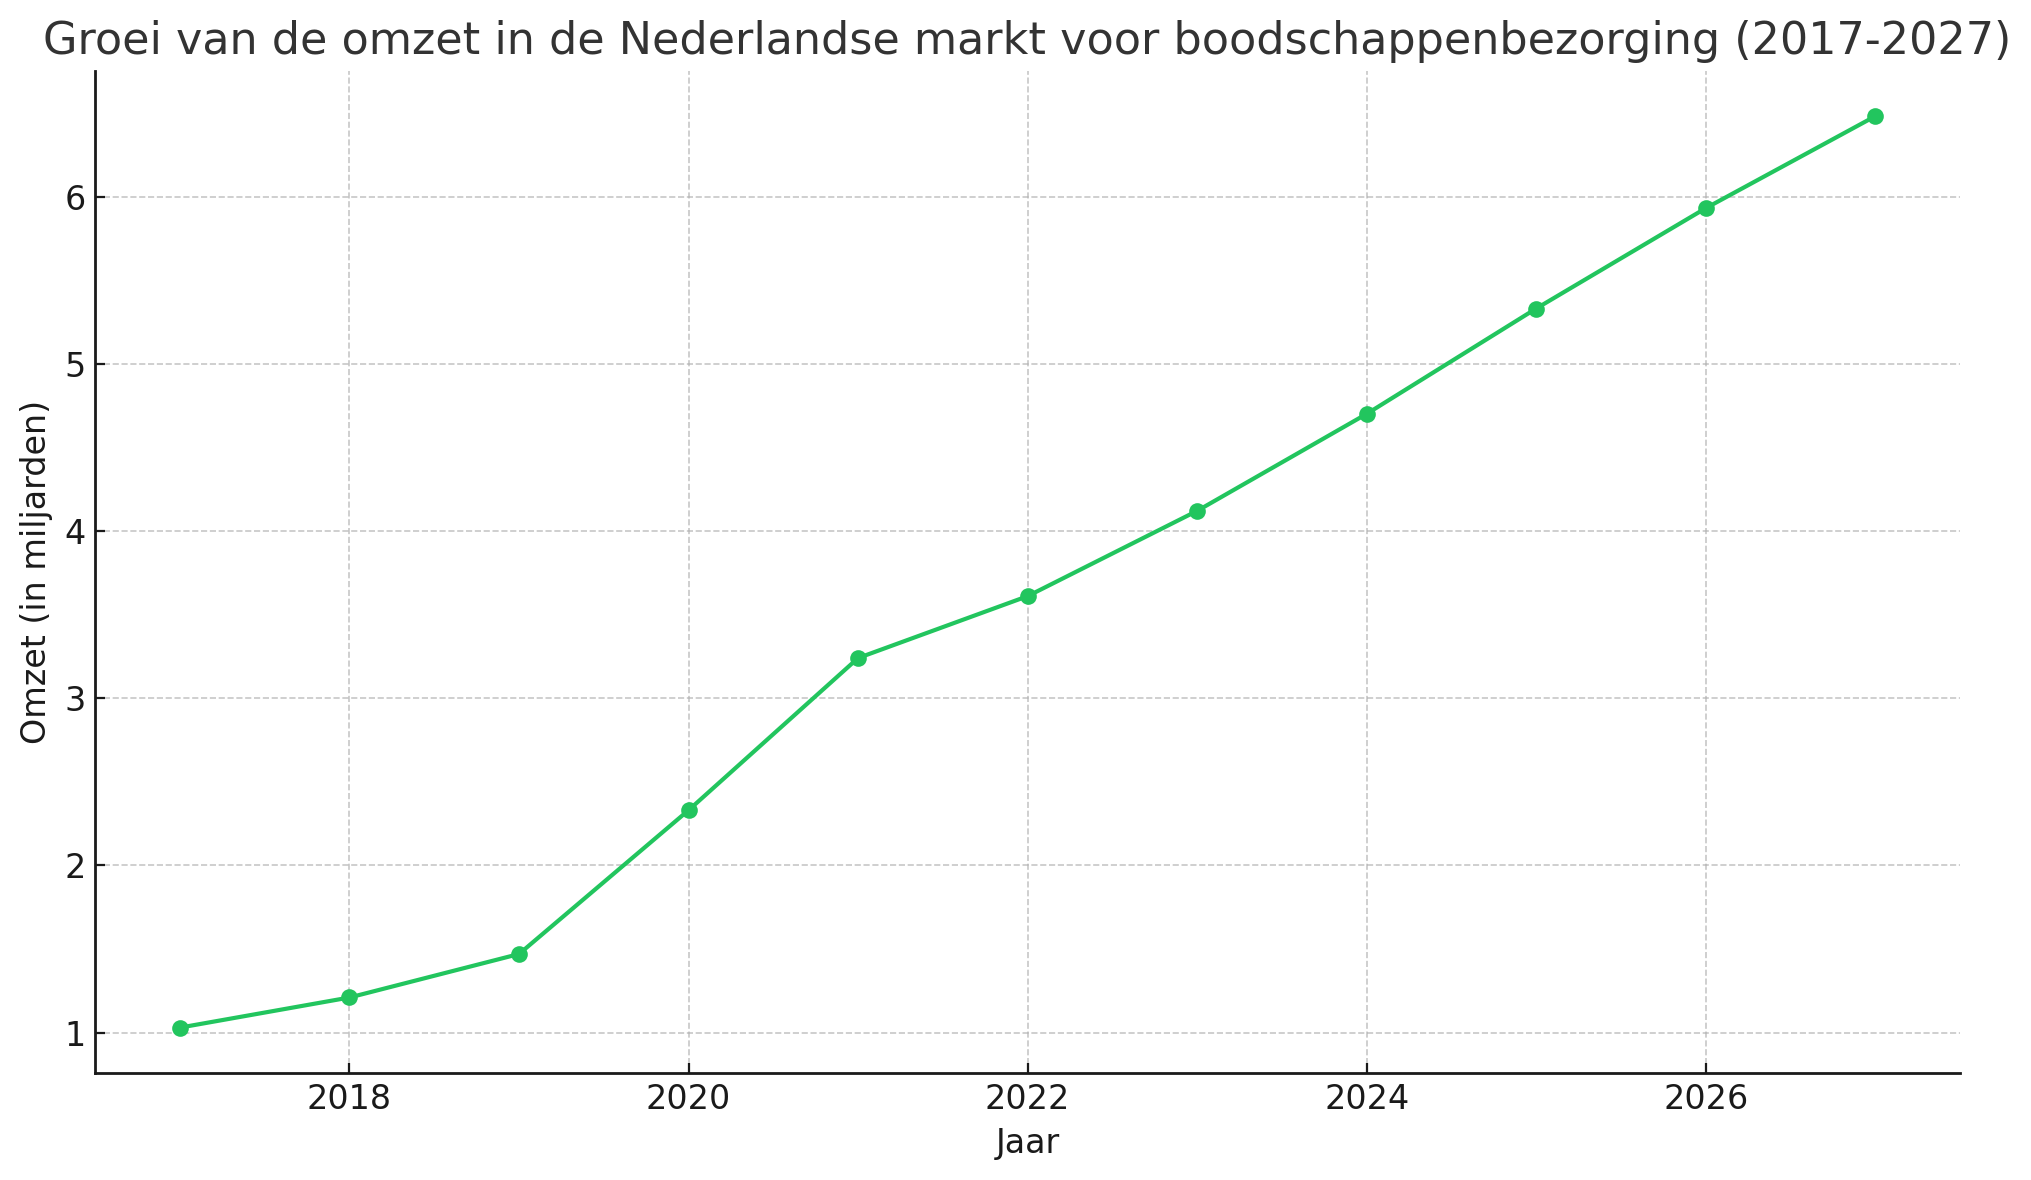 Groei van de omzet in de Nederlandse markt voor boodschappenbezorging